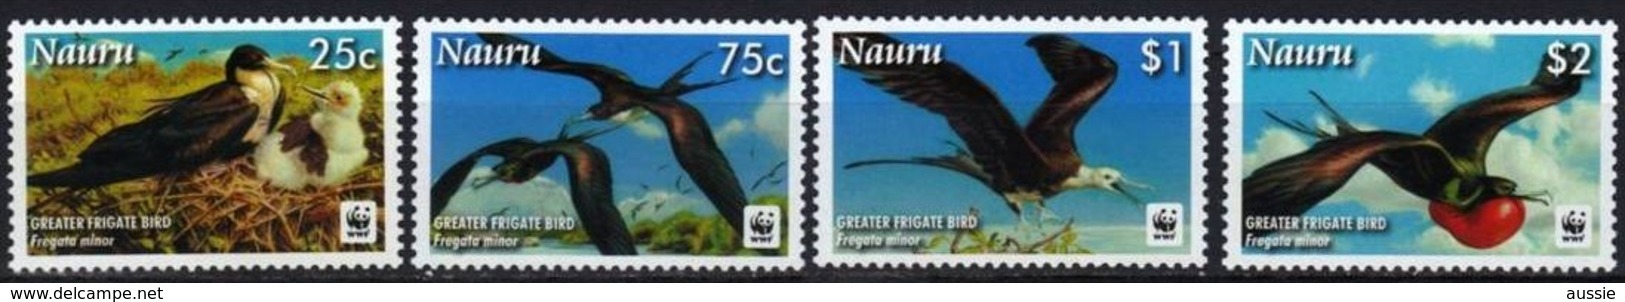 Nauru 2008 Yvertn° 632-635 *** MNH  Cote 9 Euro Faune Oiseaux Vogels Birds WWF - Nauru